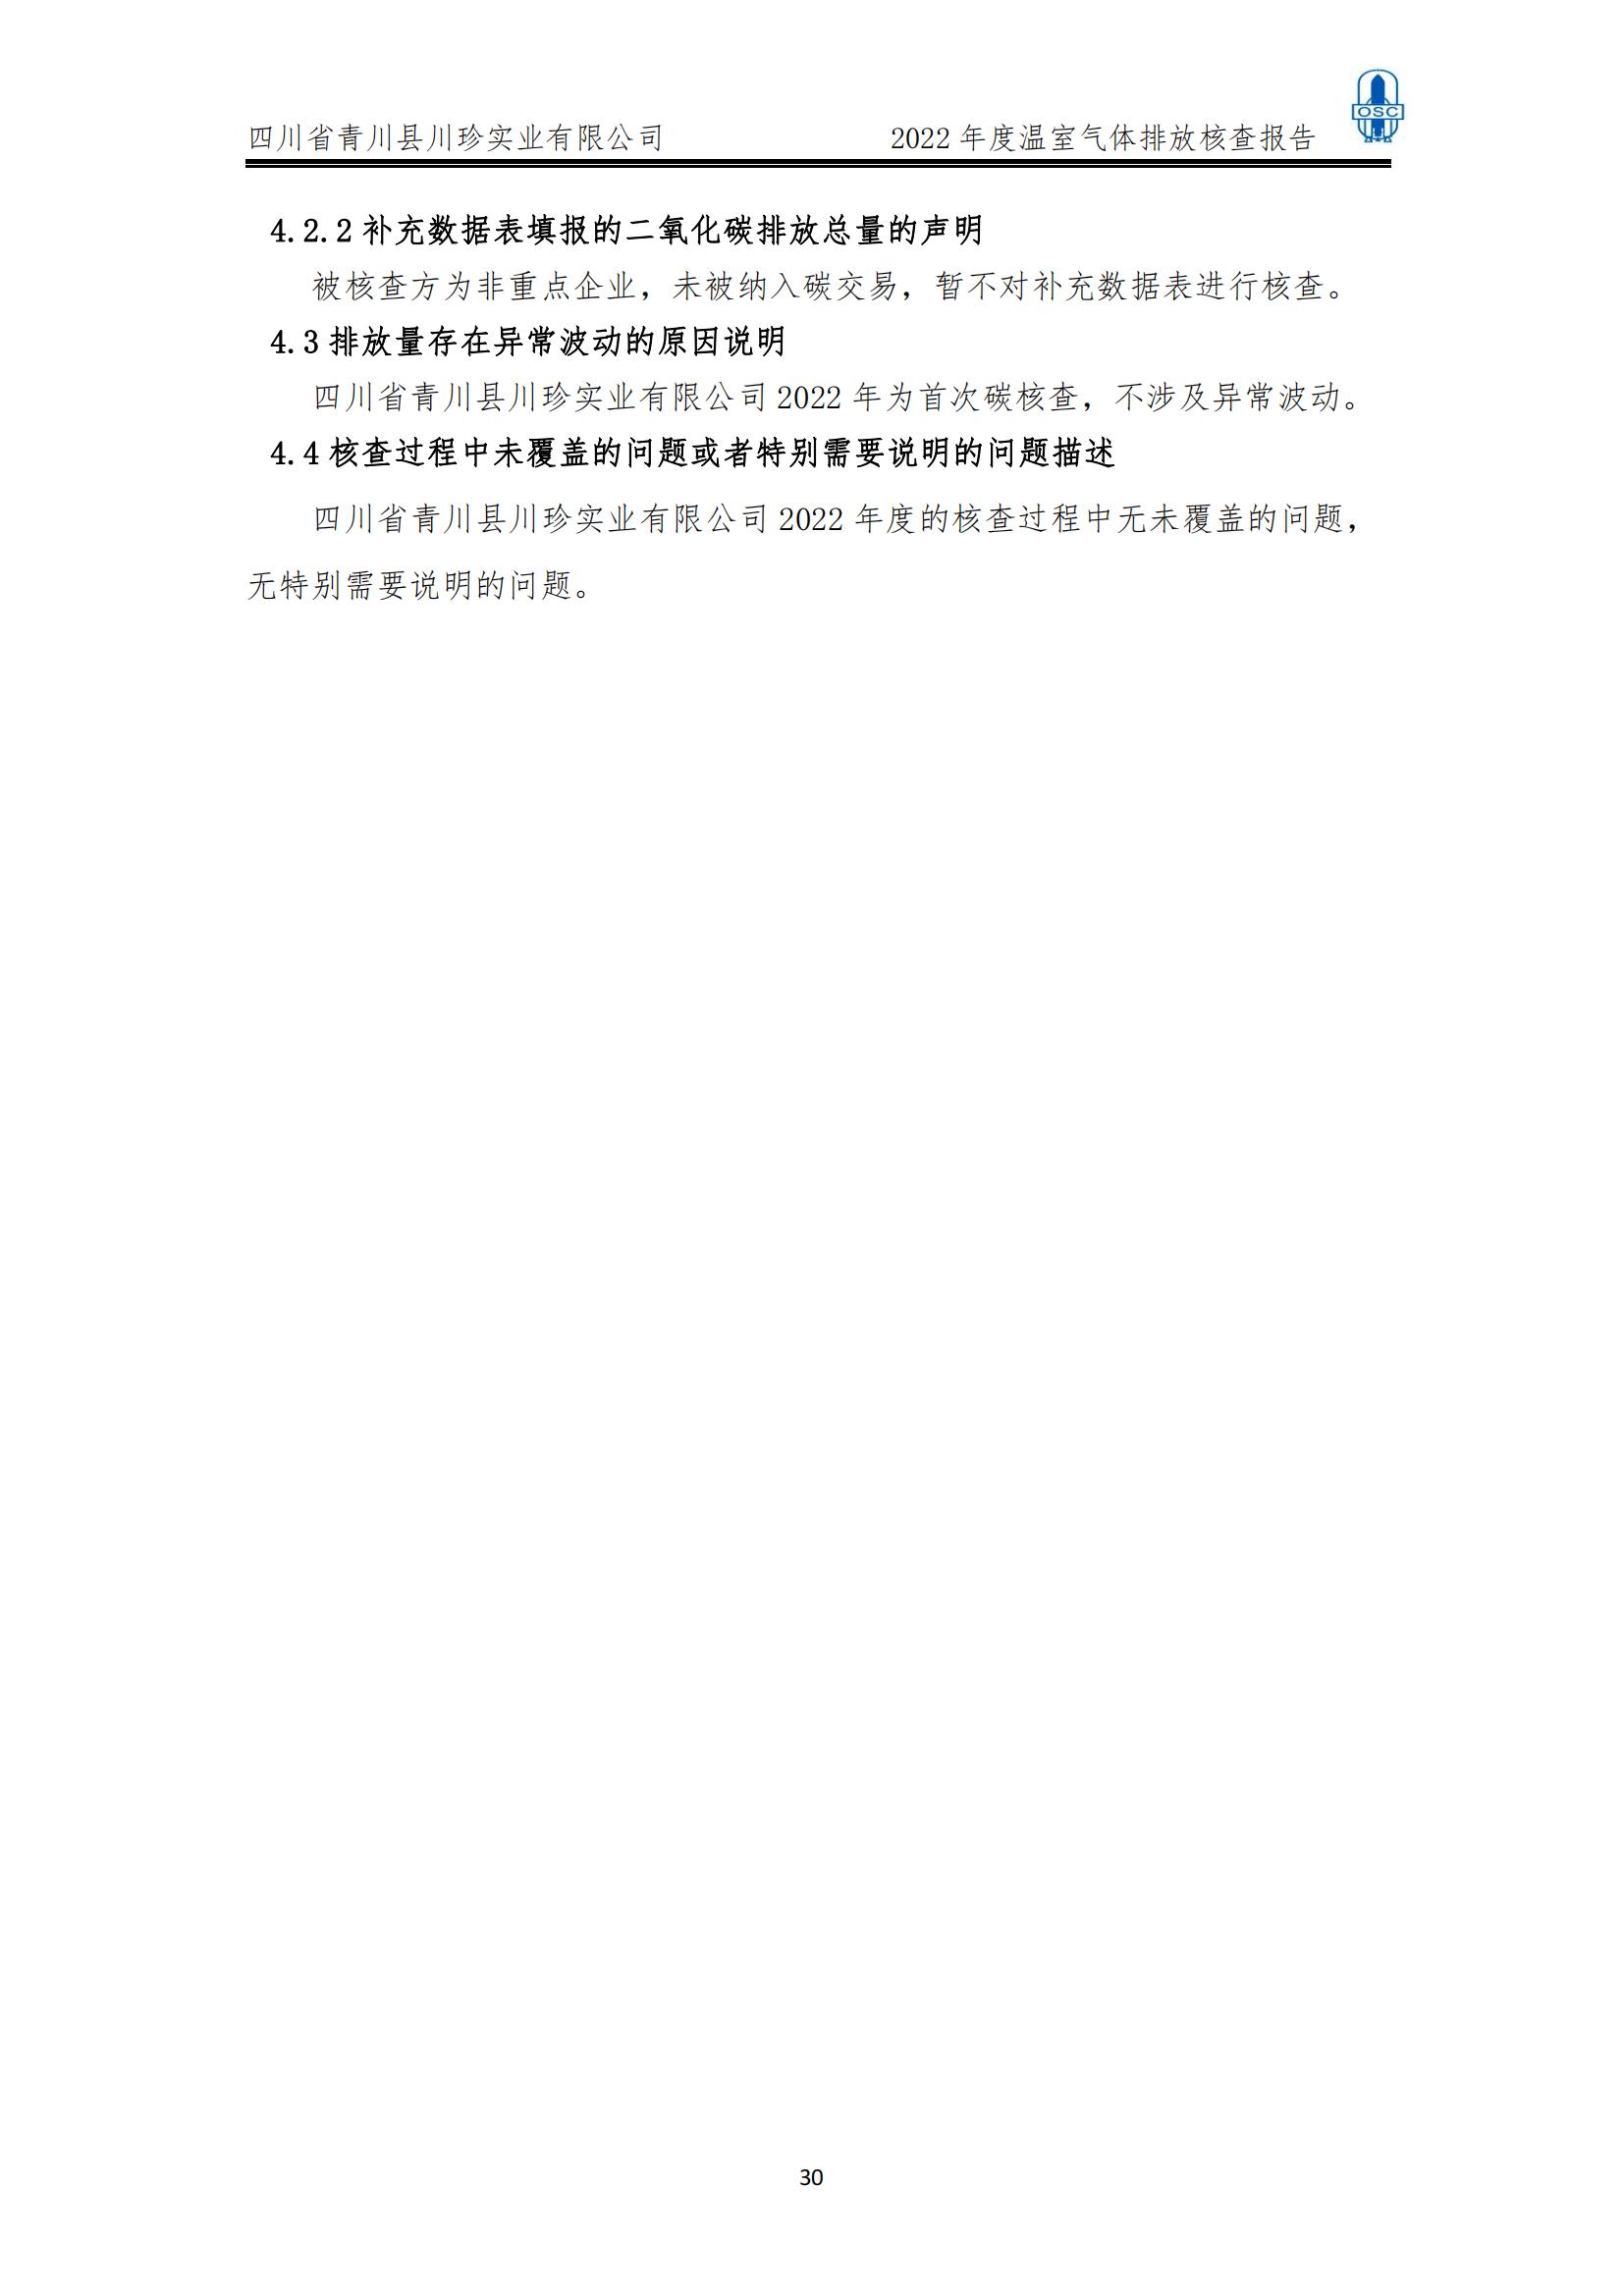 2022年度温室气体核查报告(四川省青川县川珍实业有限公司(图31)